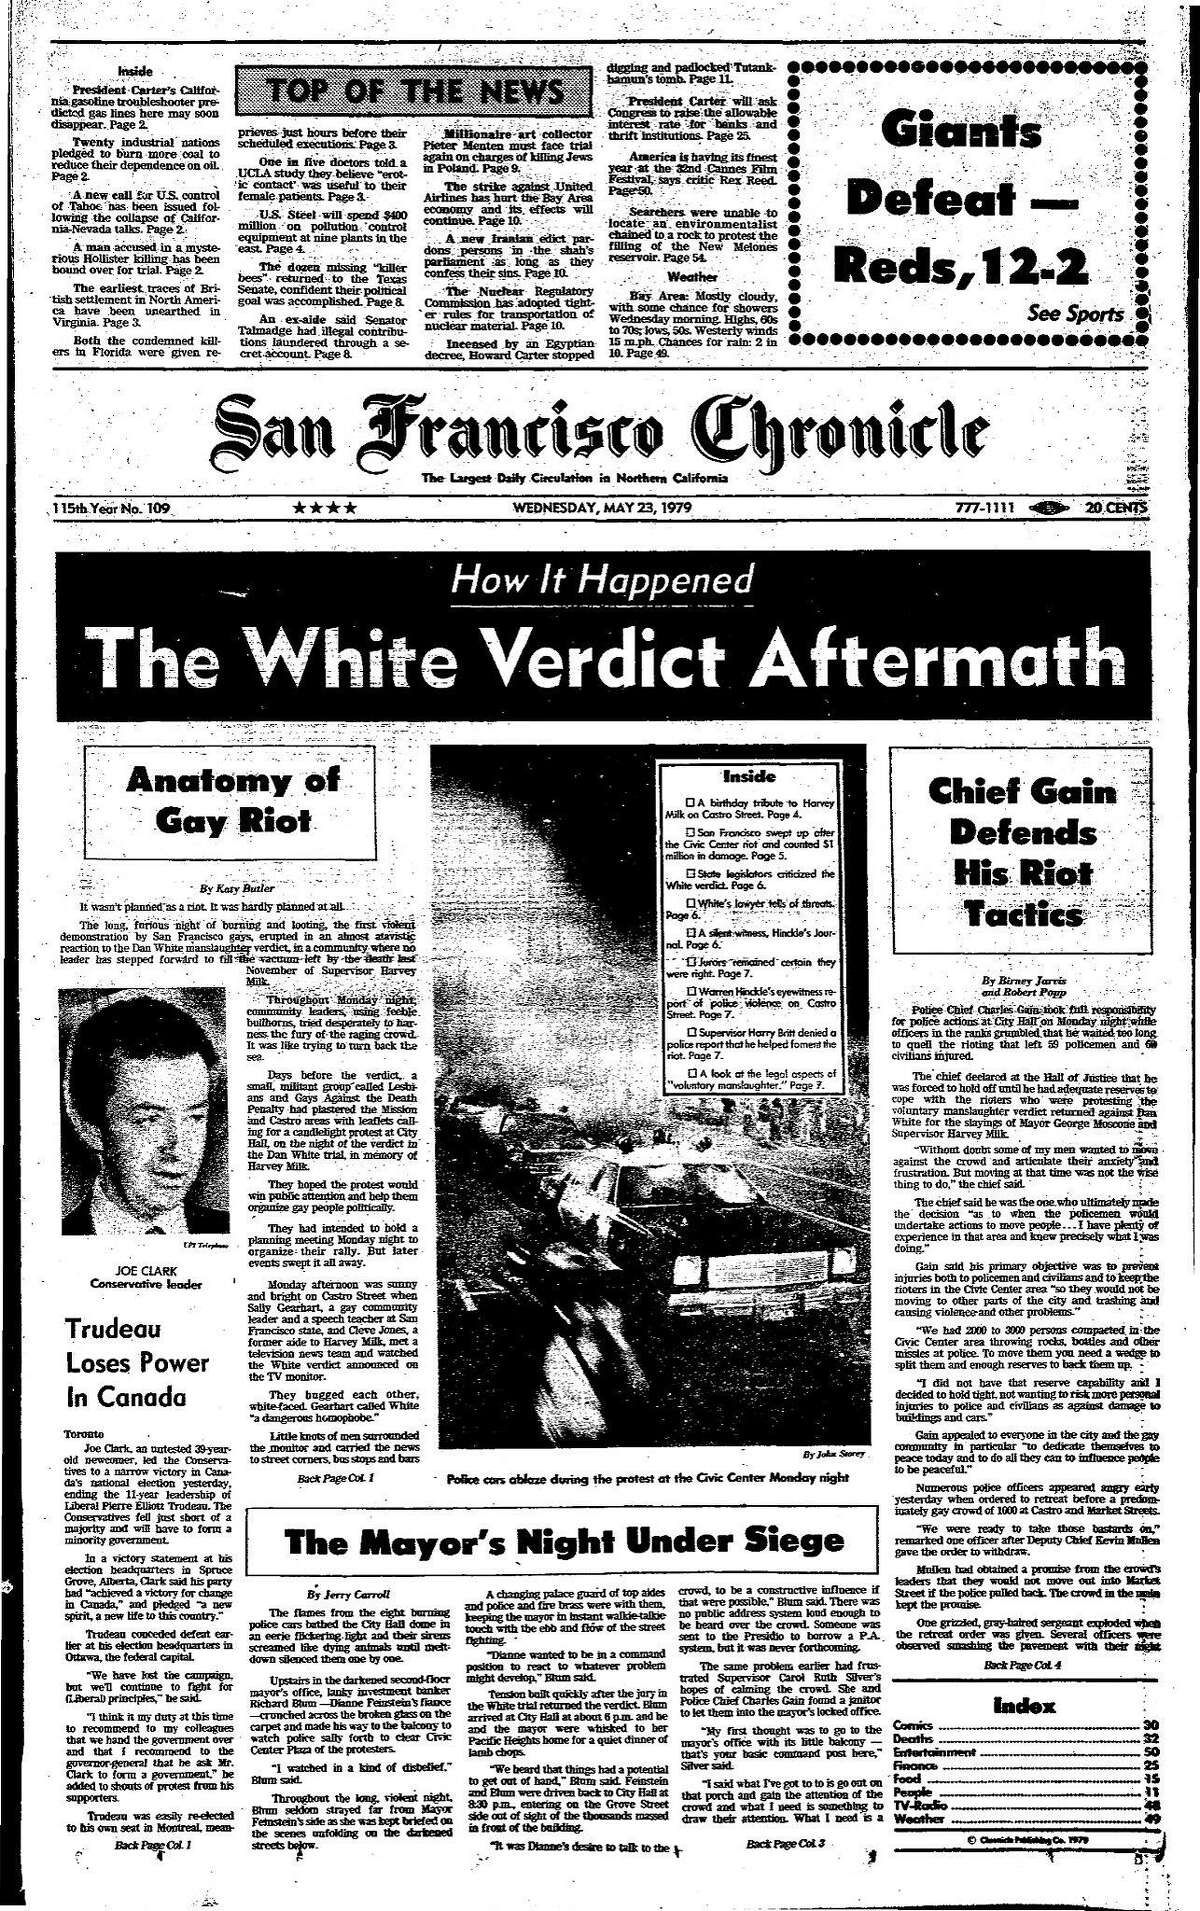 《历史纪事报》头版1979年5月23日丹·怀特判决引发暴力抗议的后果